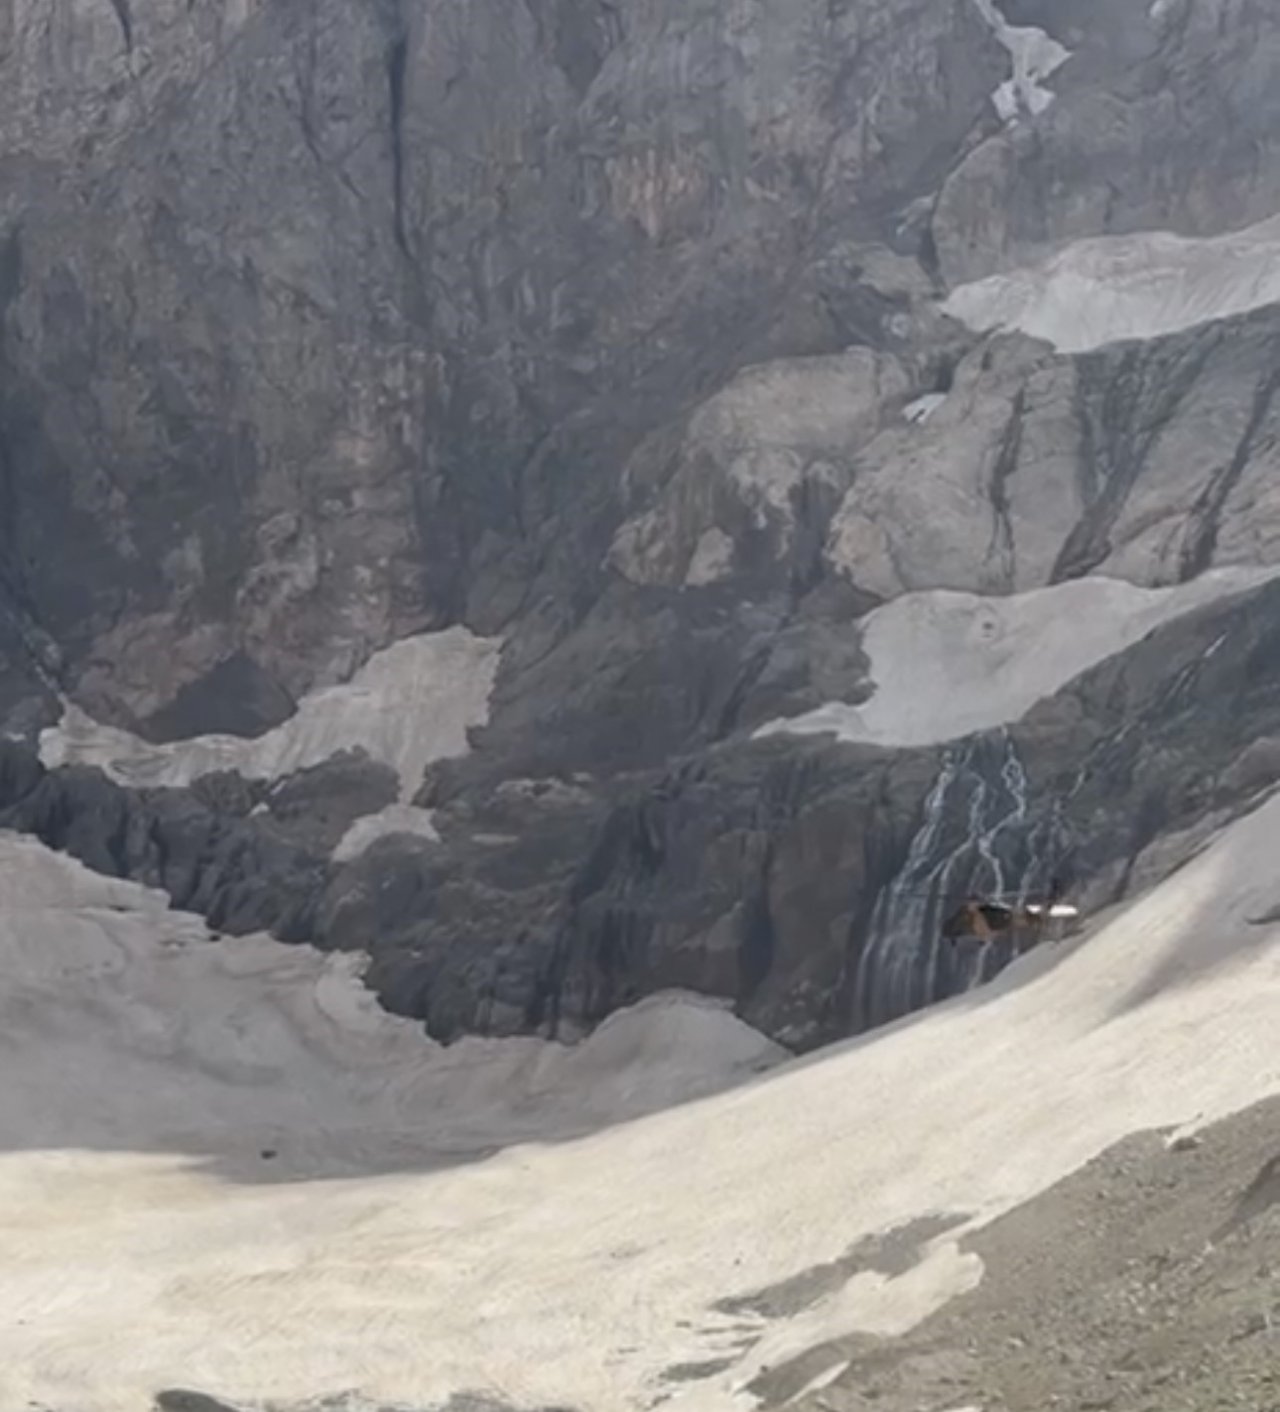 Cilo buzullarına düşen dağcıların kurtarılma anı anbean kamerada